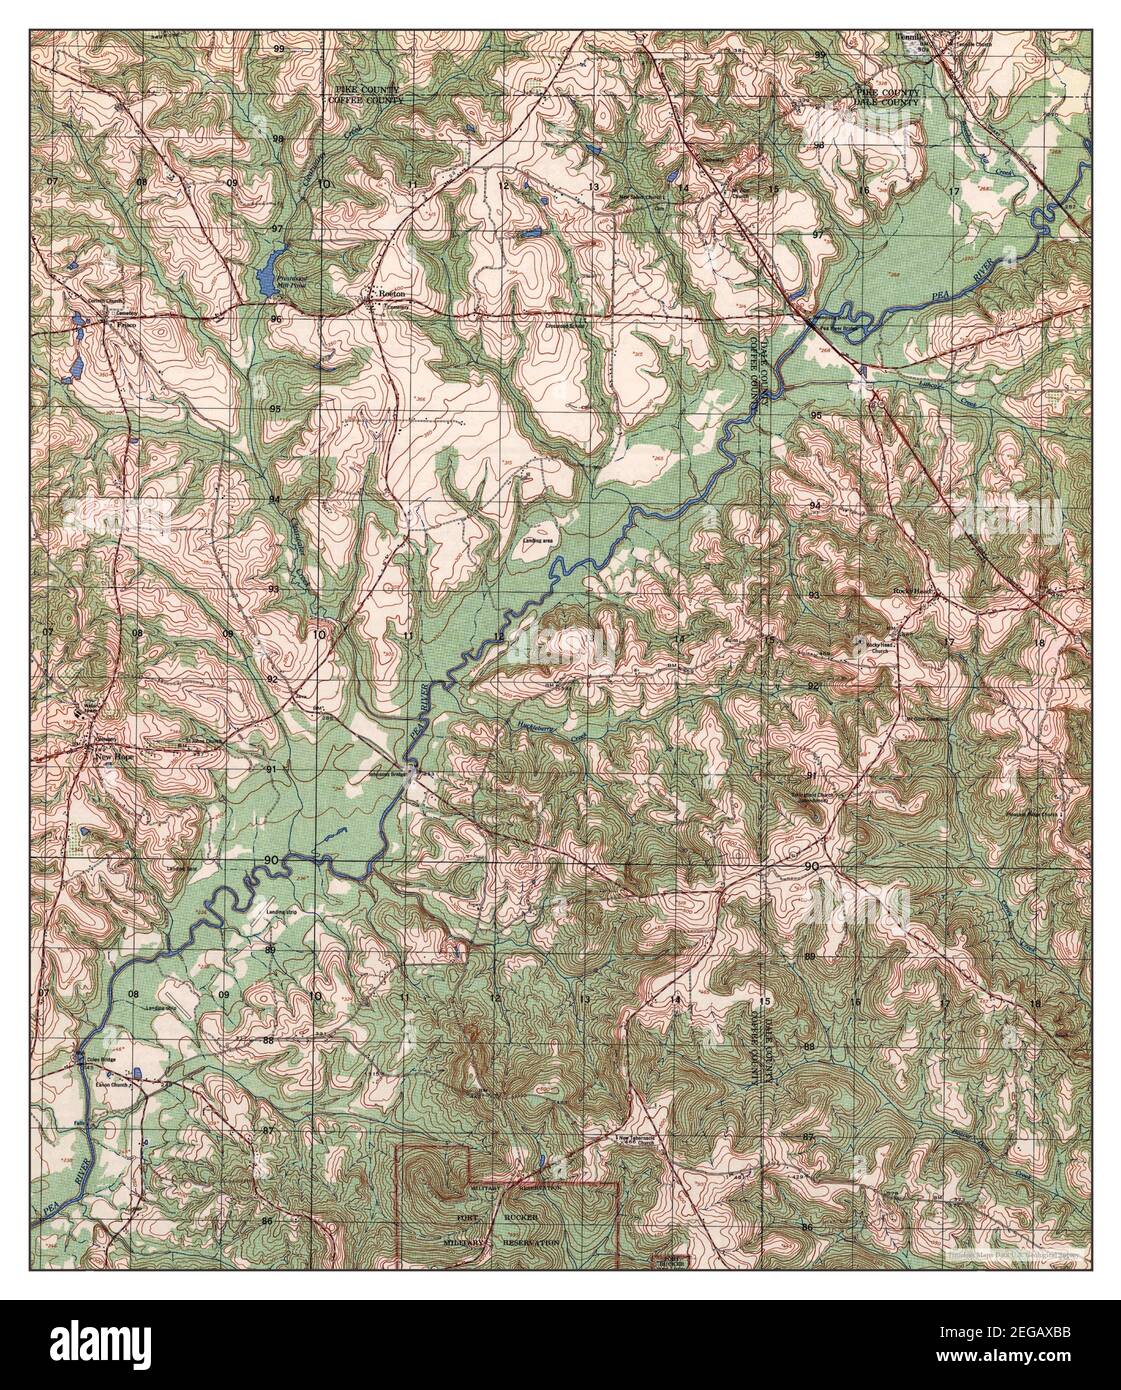 Brundidge SE, Alabama, map 1962, 1:25000, United States of America by Timeless Maps, data U.S. Geological Survey Stock Photo